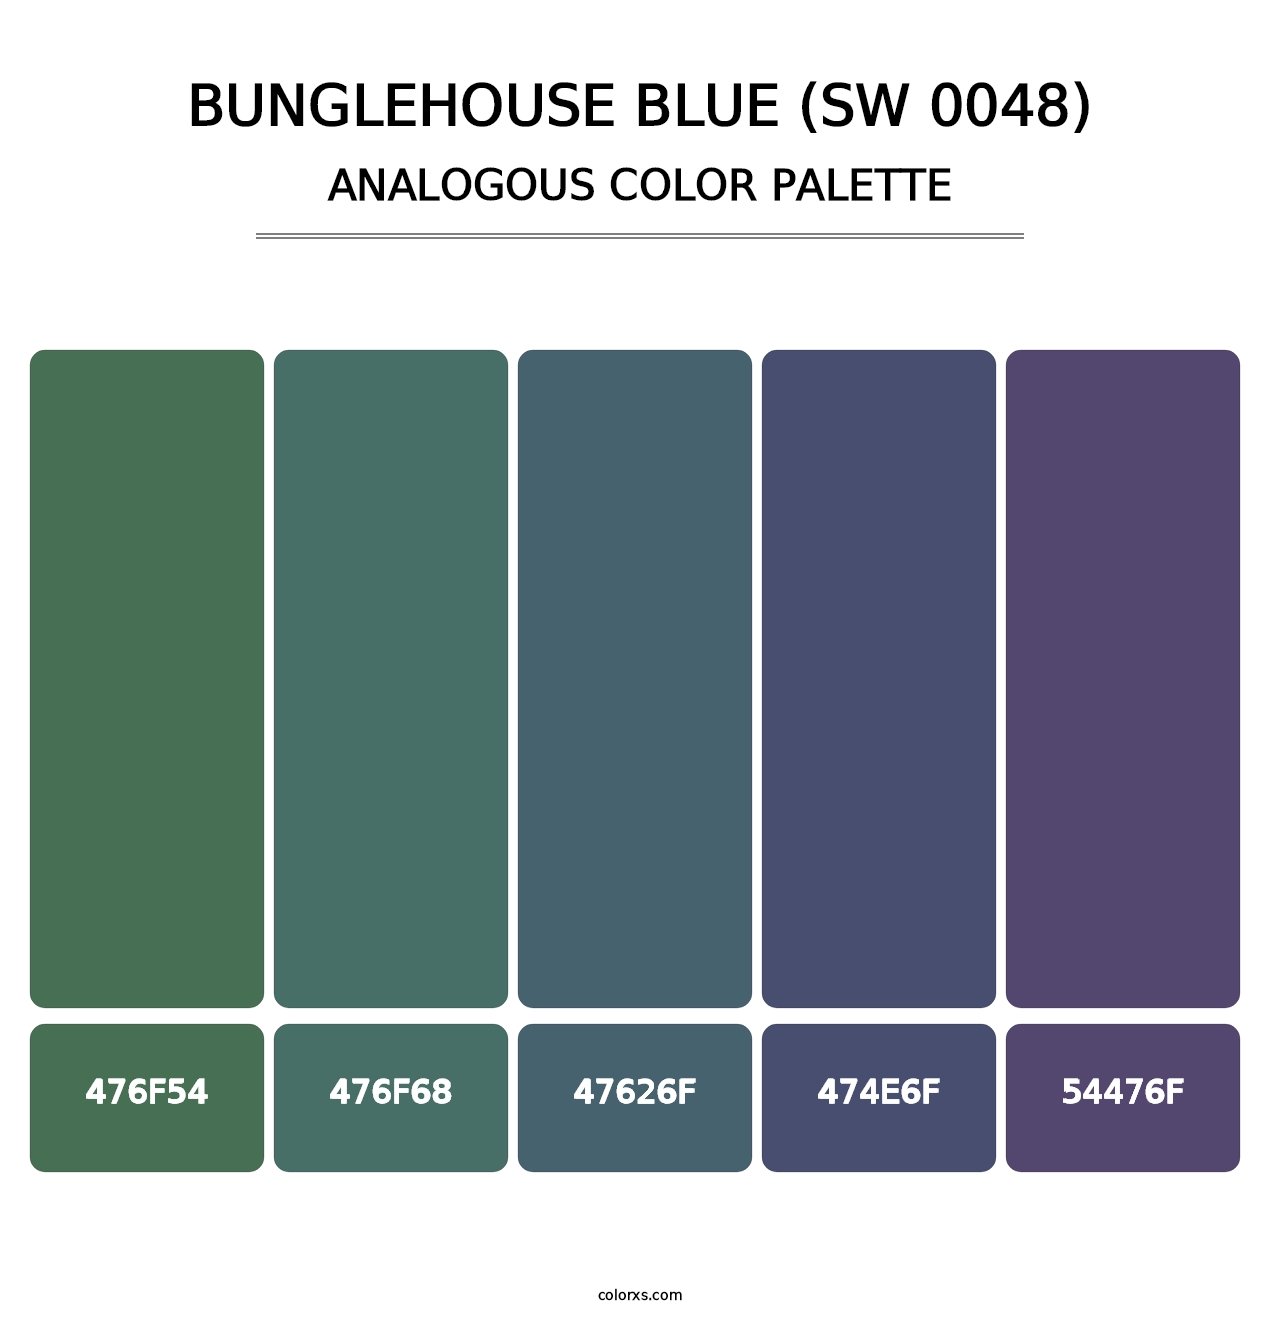 Bunglehouse Blue (SW 0048) - Analogous Color Palette